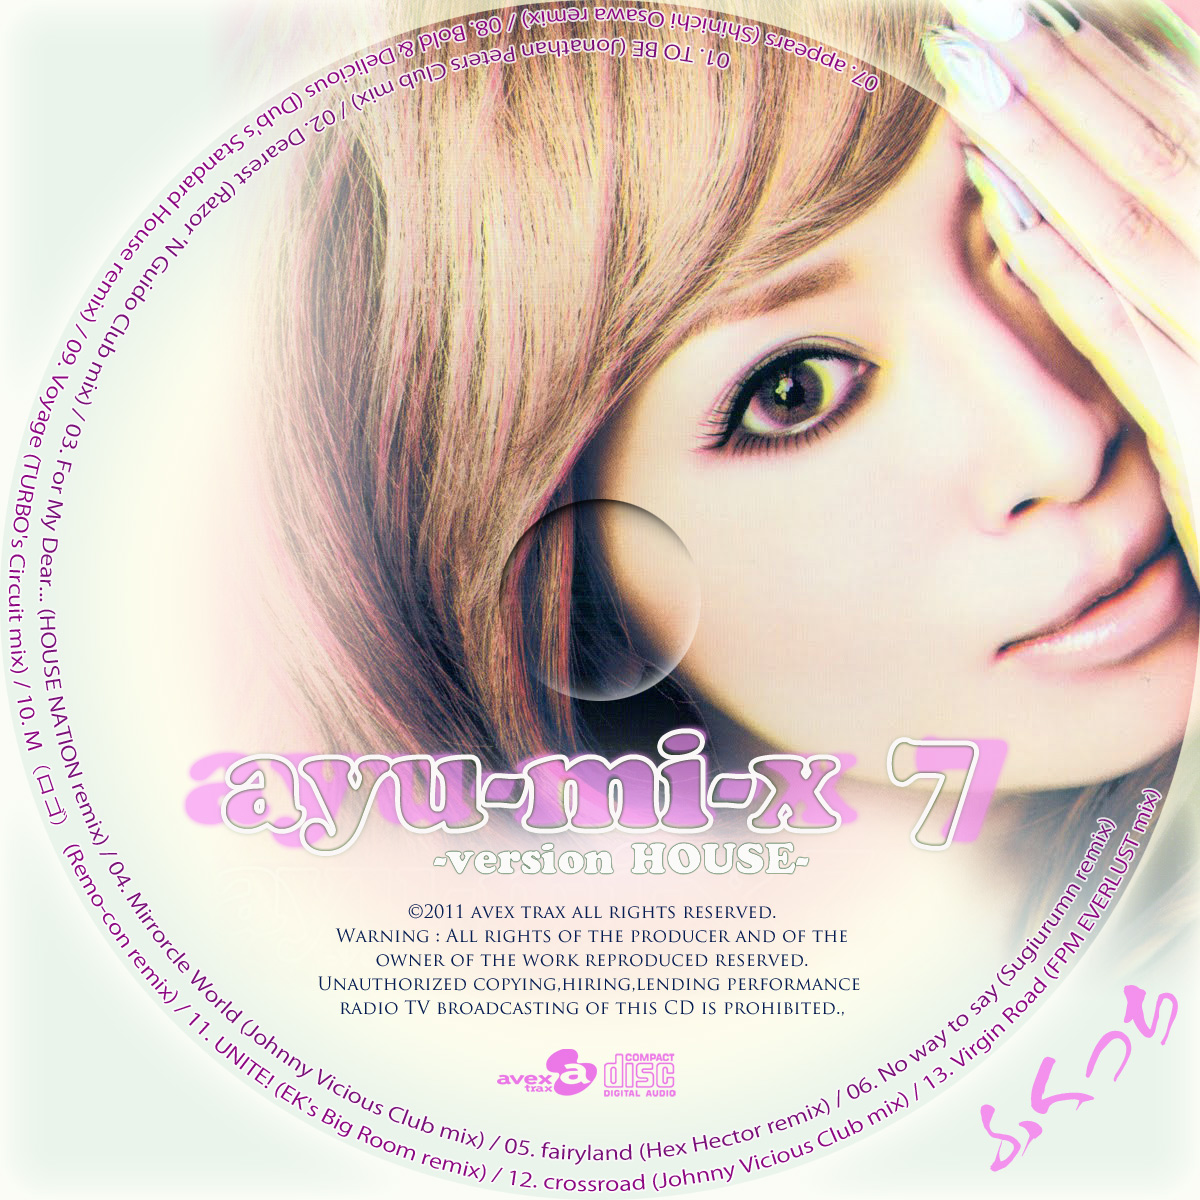 浜崎あゆみ - ayu-mi-x 7 | ふくっちの音楽CD/DVDカスタムレーベル